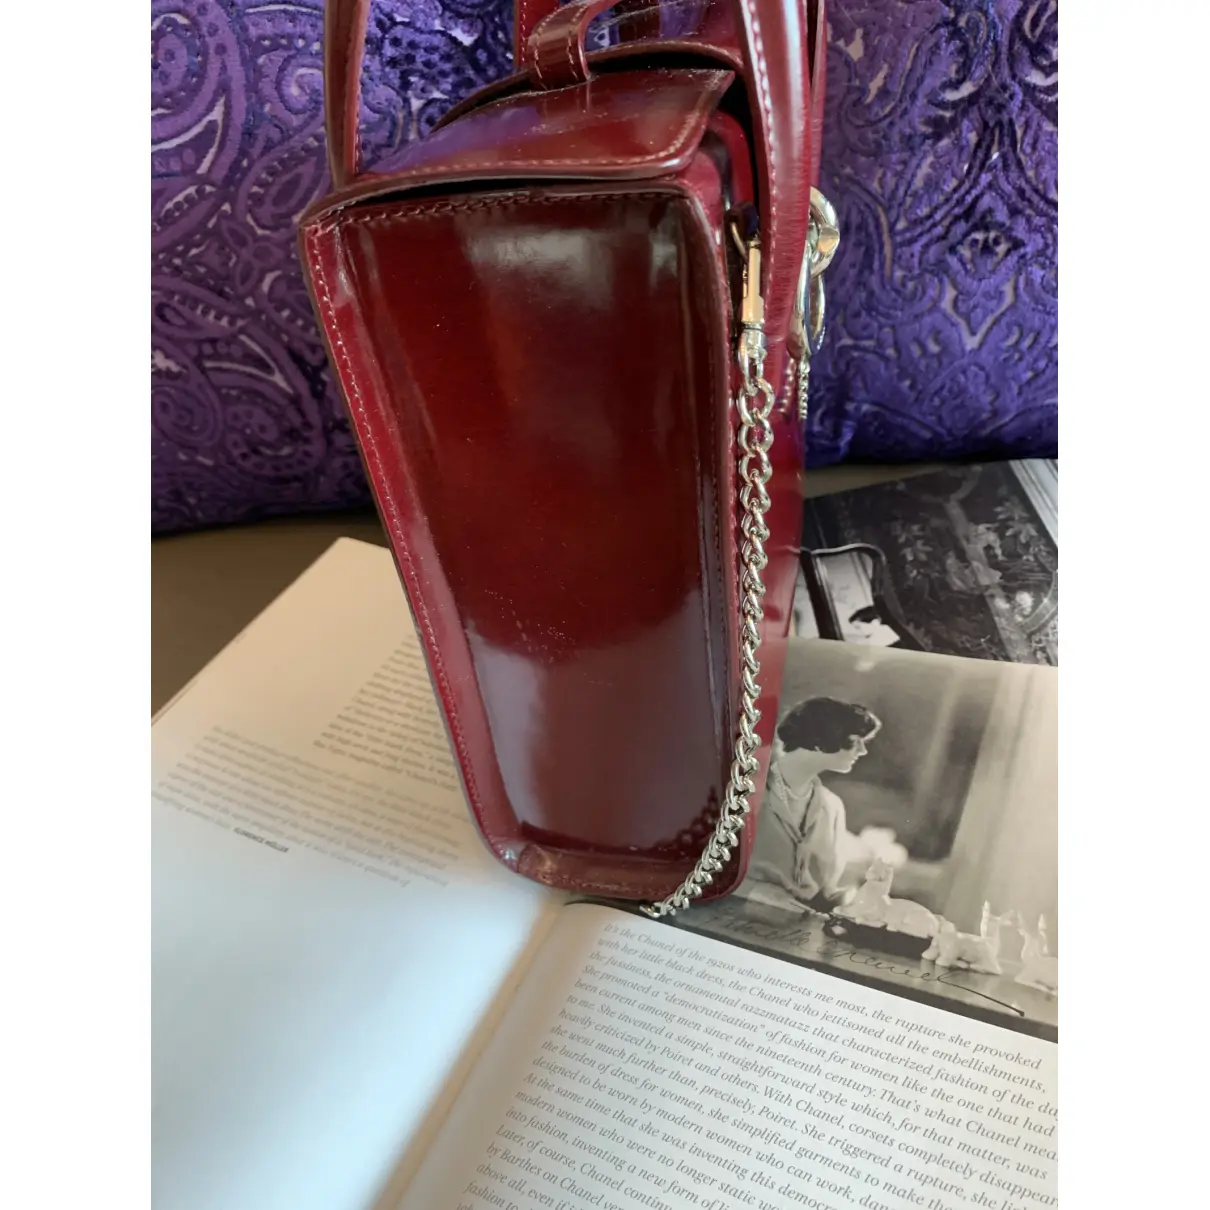 Panthère leather handbag Cartier - Vintage